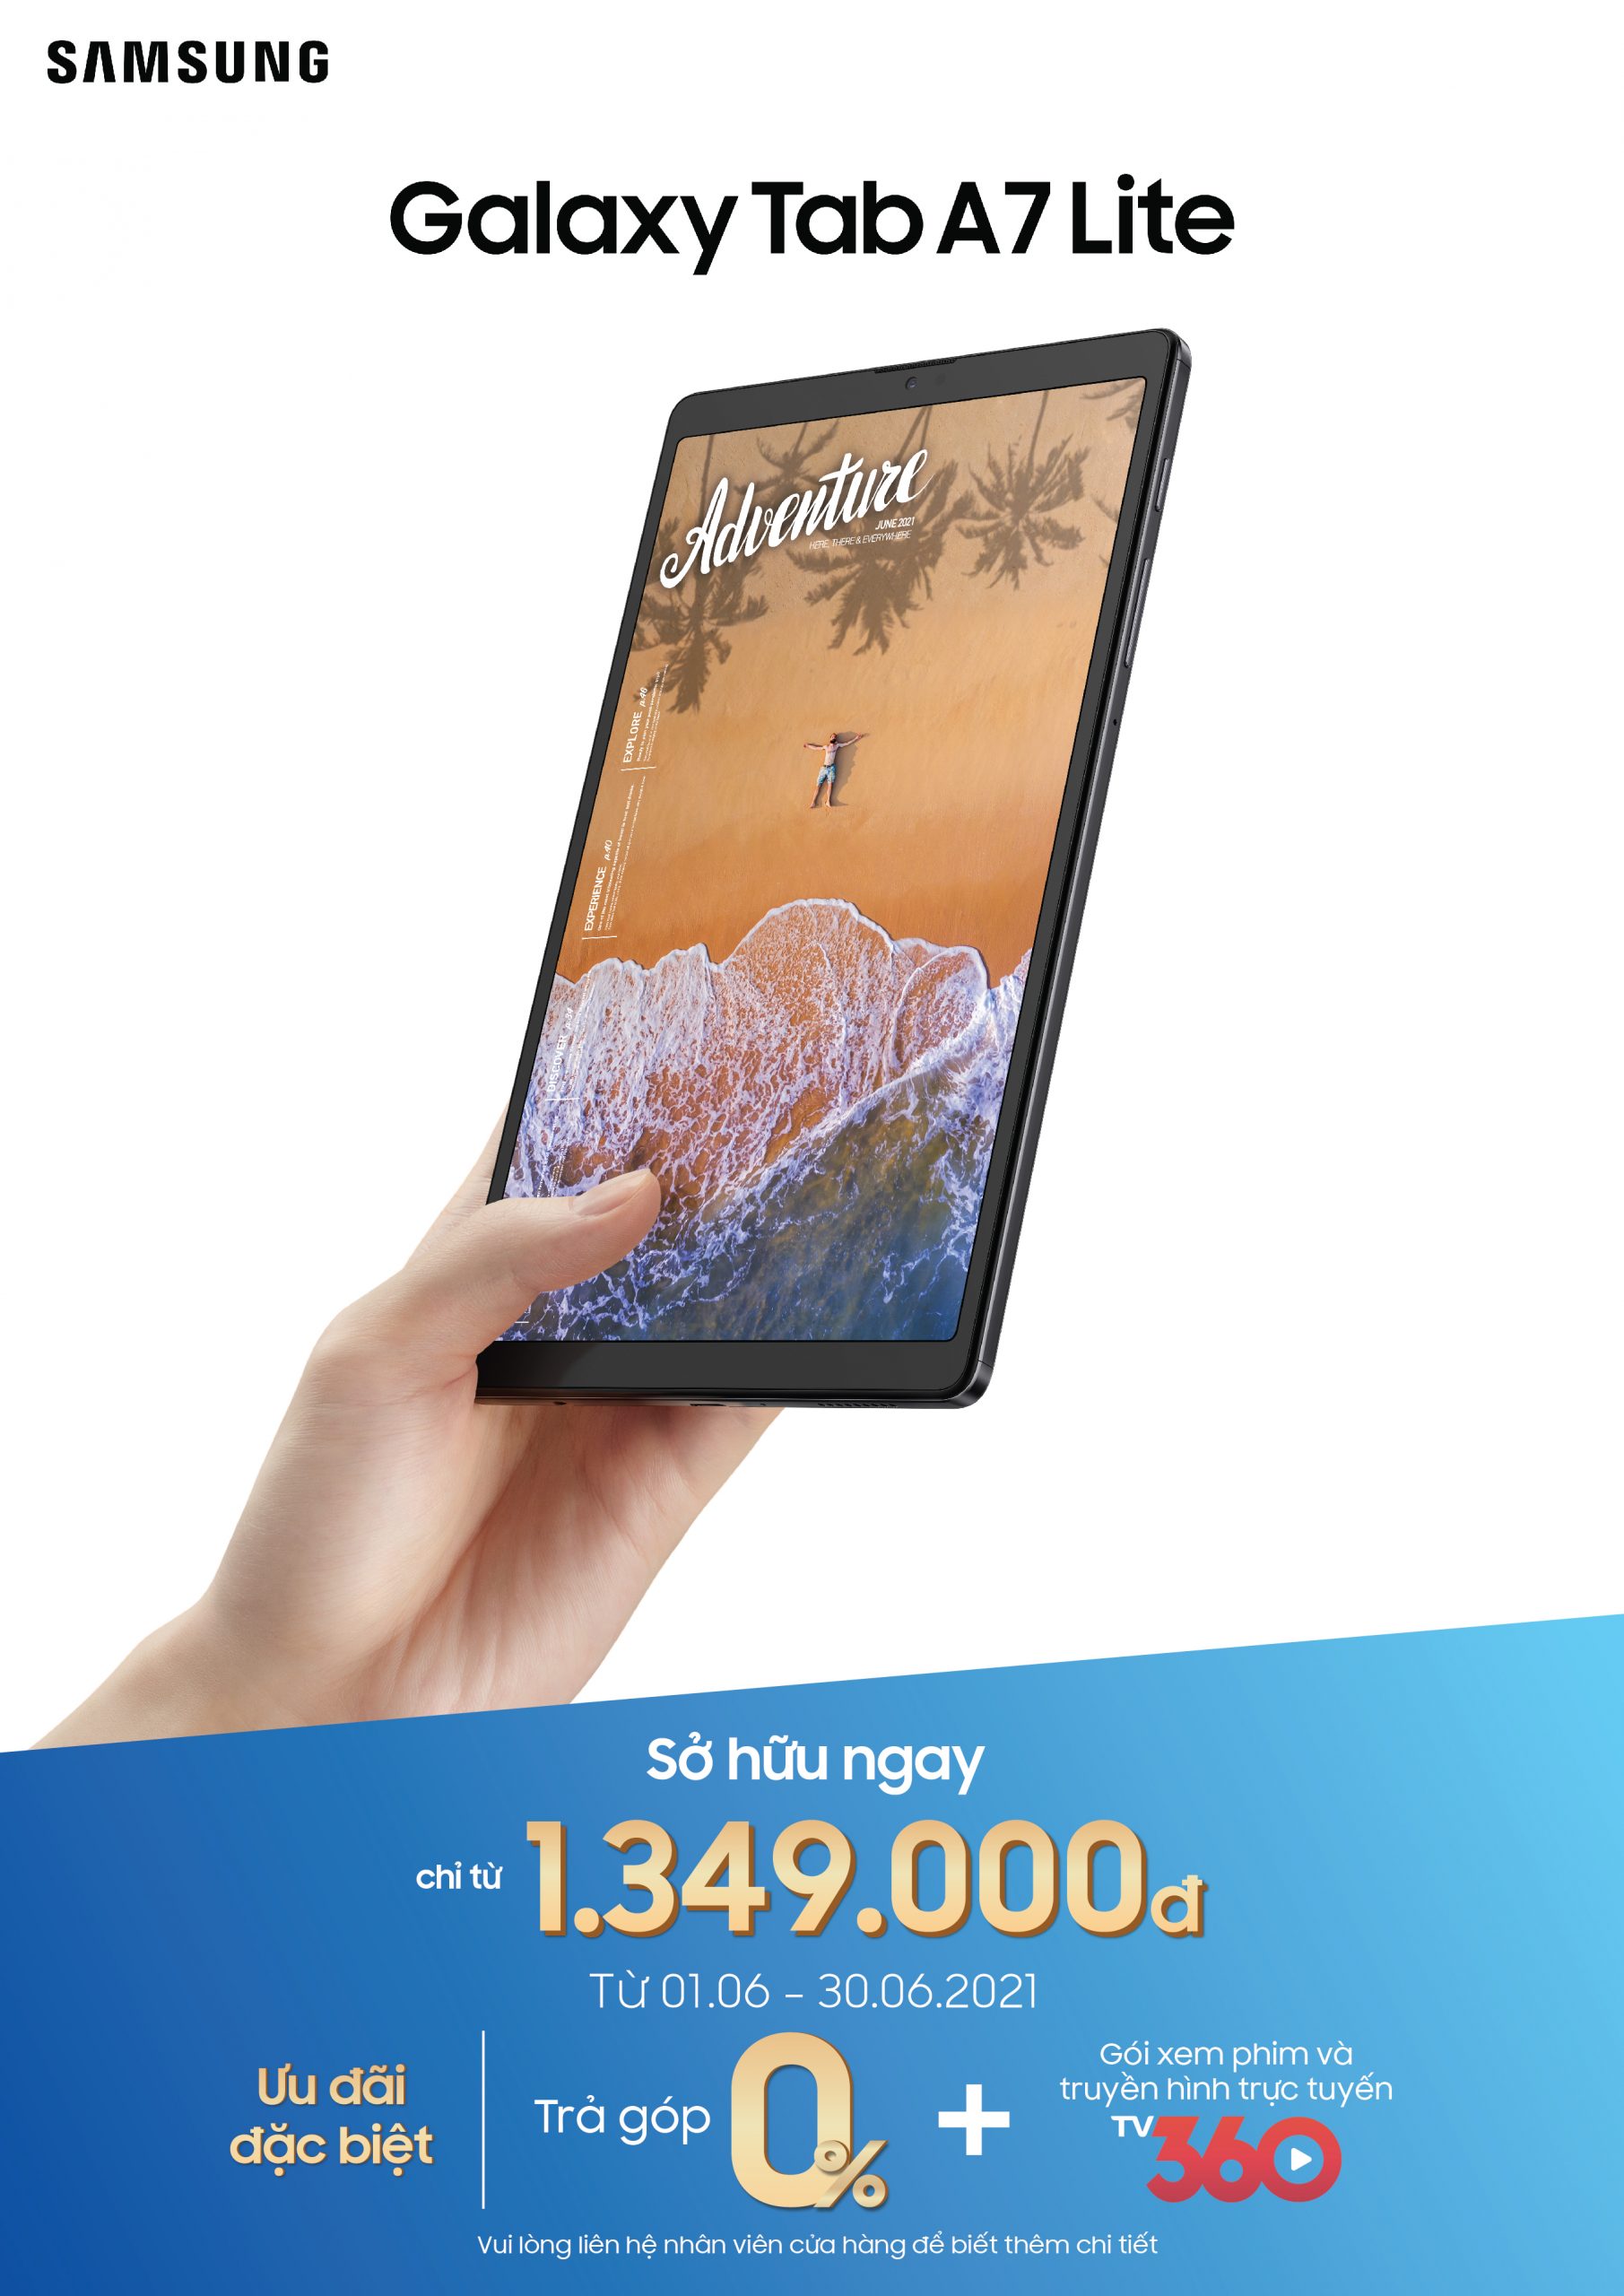 Galaxy Tab A7 Lite - Chiếc máy tính bảng lý tưởng dành cho học tập và giải trí ở phân khúc phổ thông